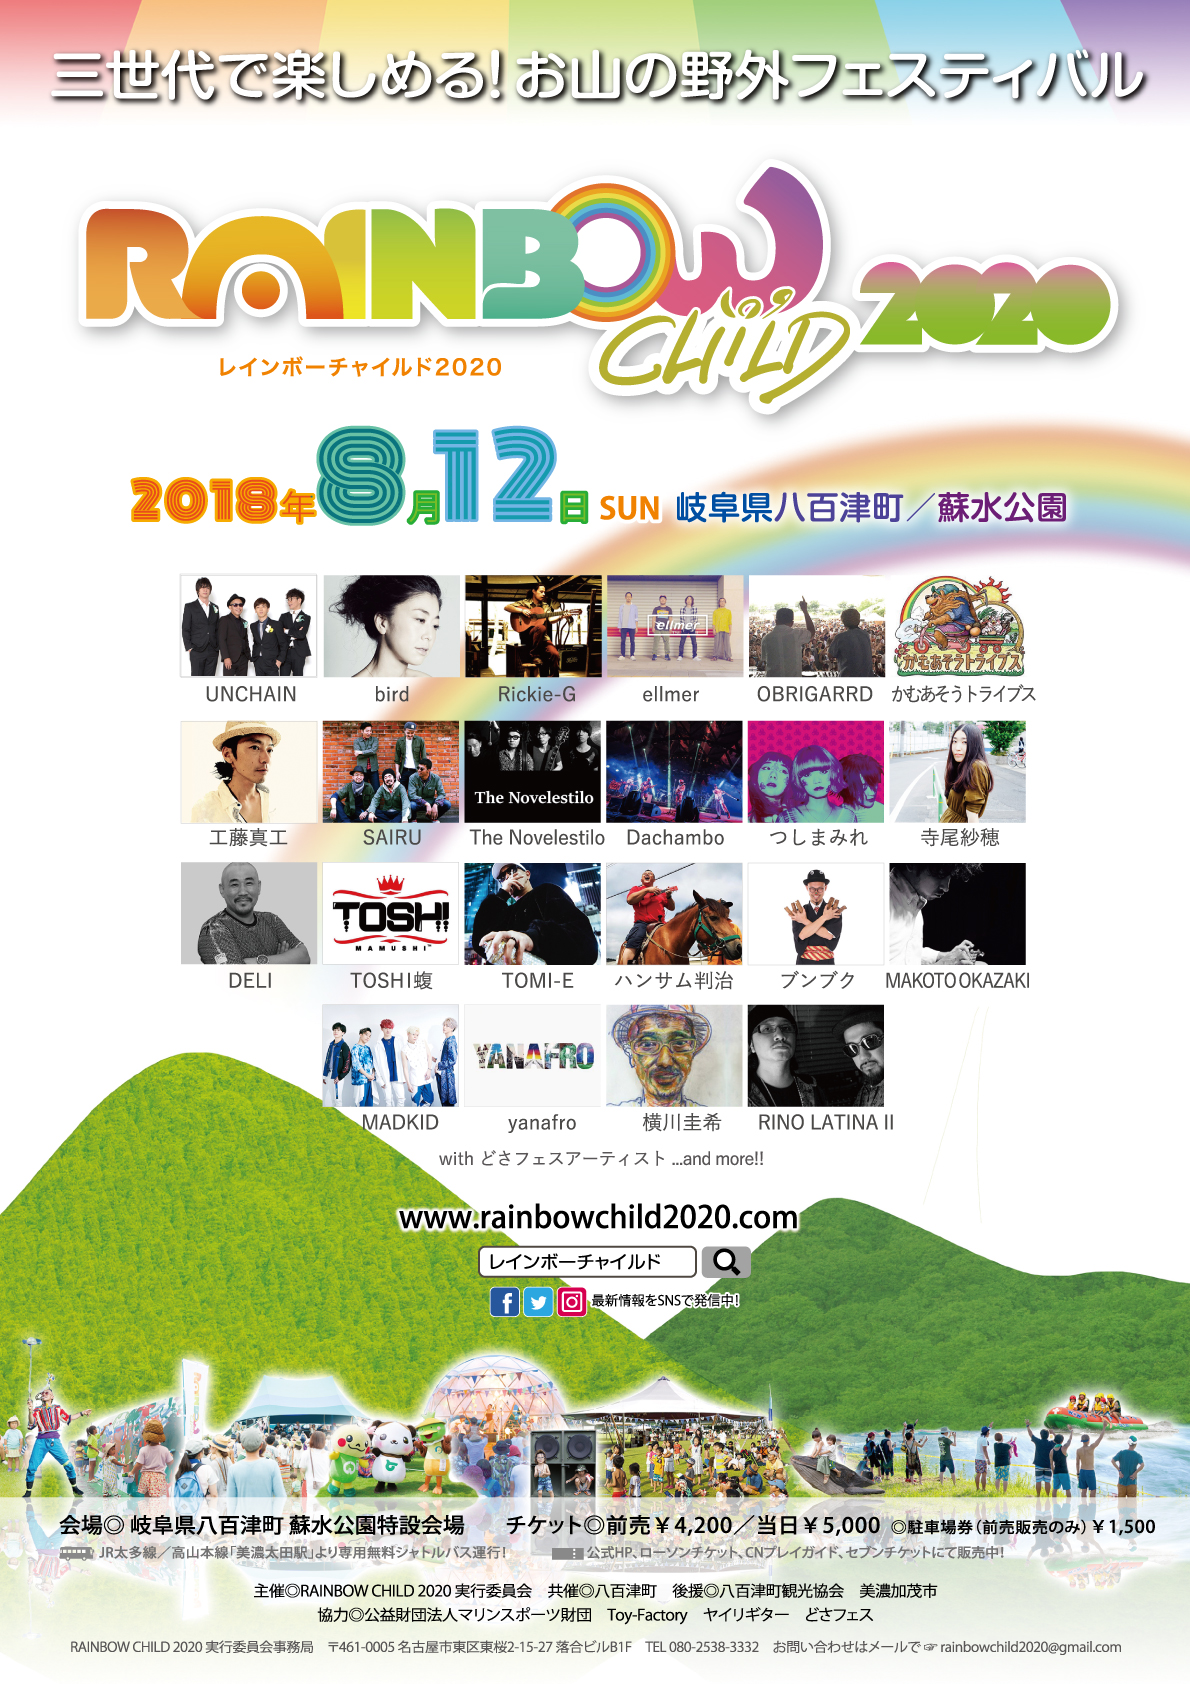 フライヤー・ポスター 2018.8.12開催 RAINBOW CHILD 2020 – RAINBOW 